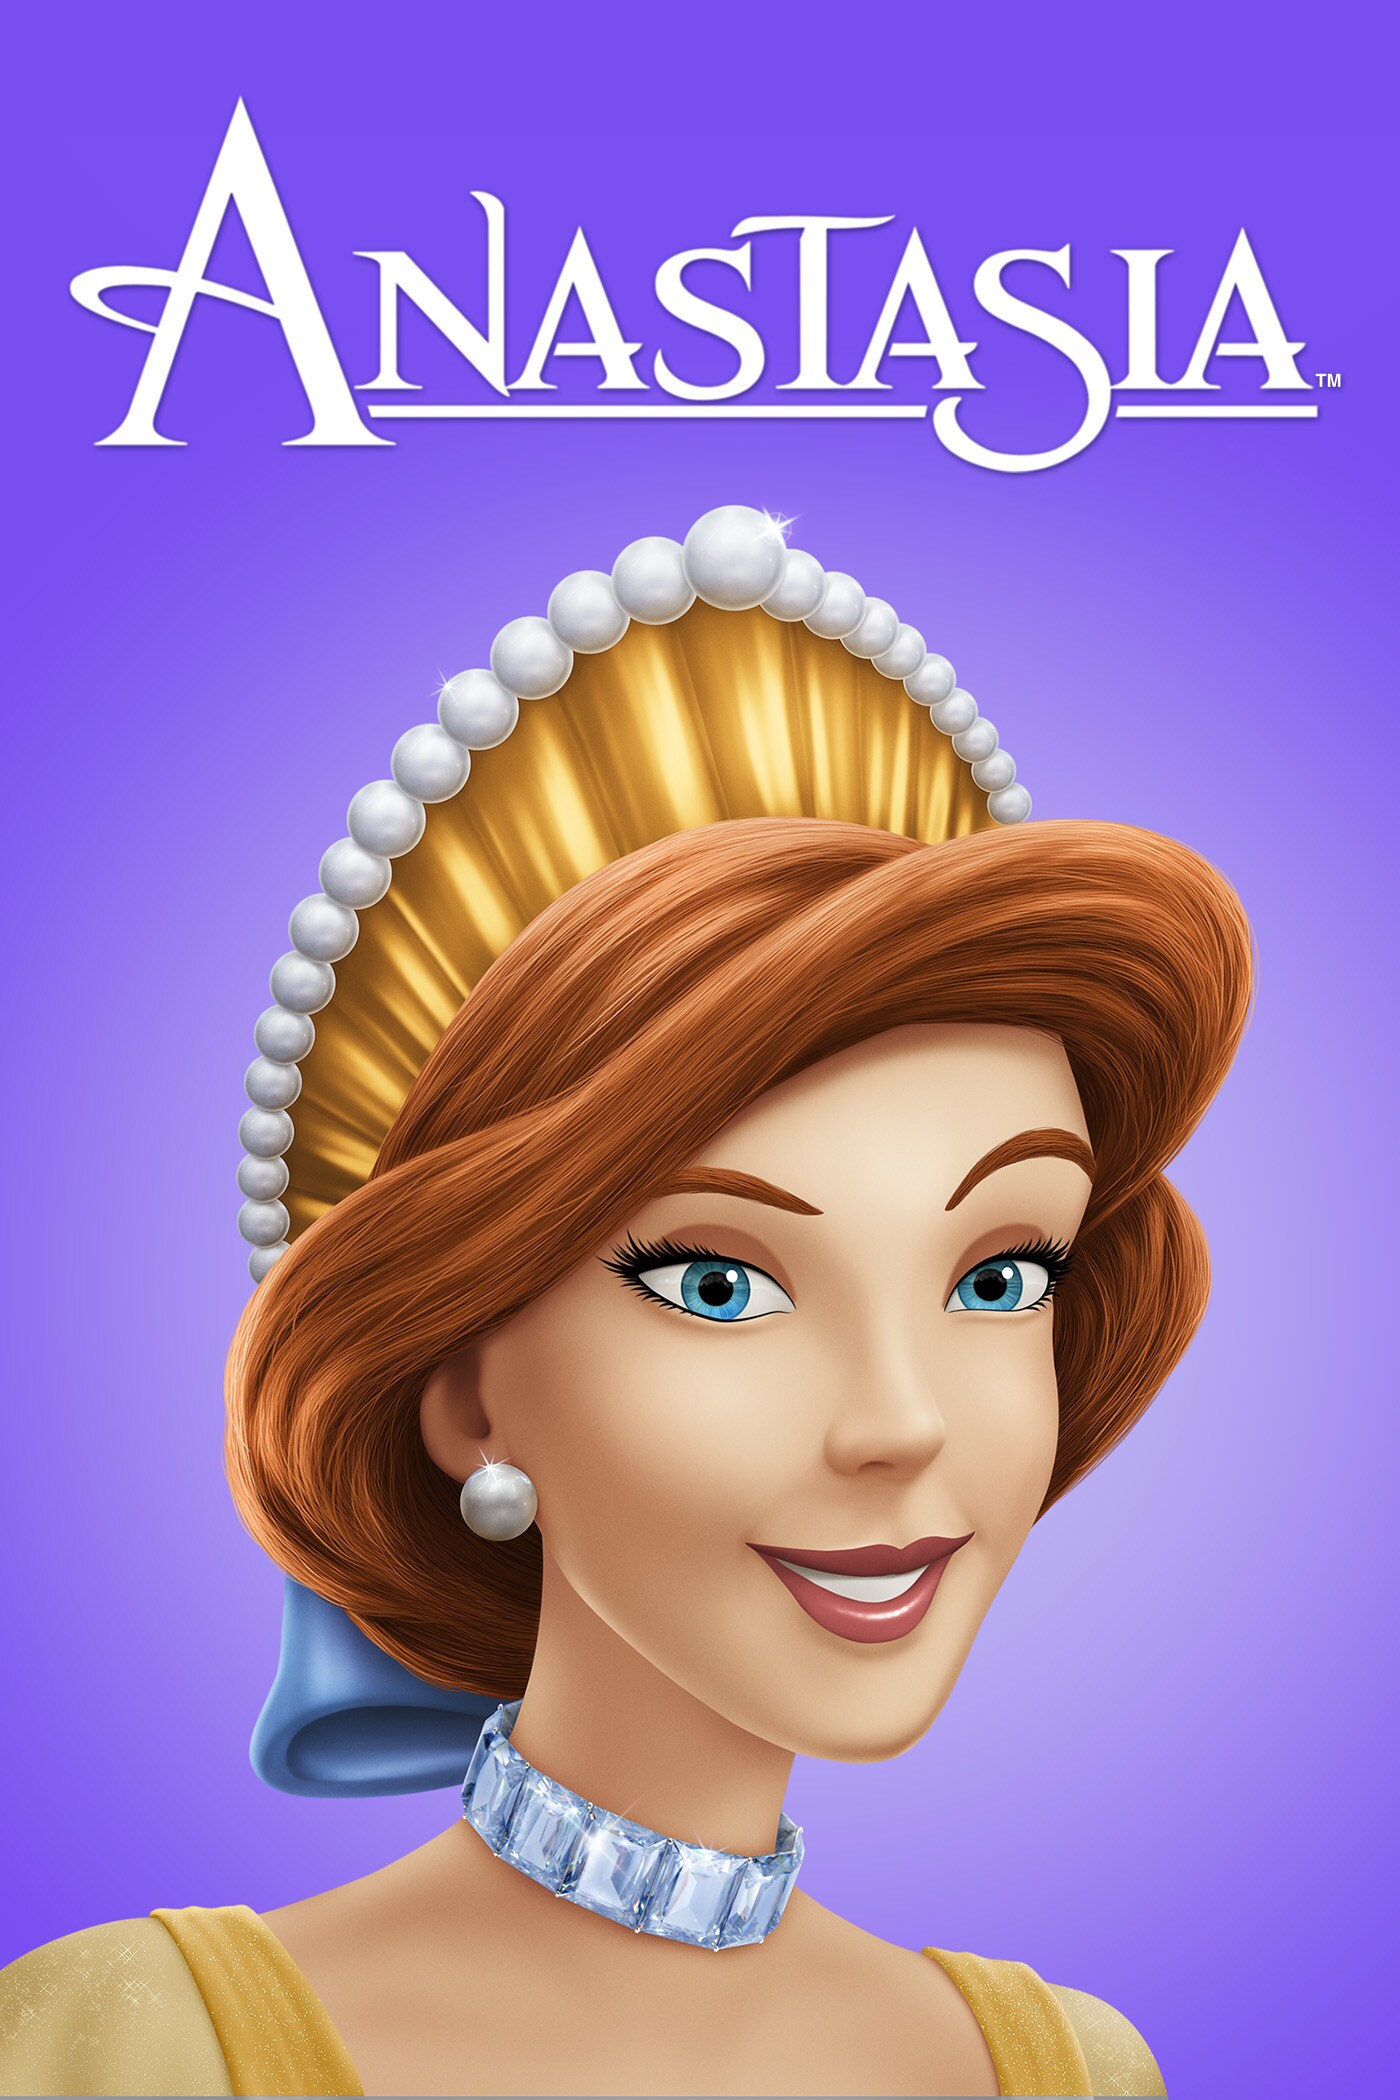 Anastasia movie poster